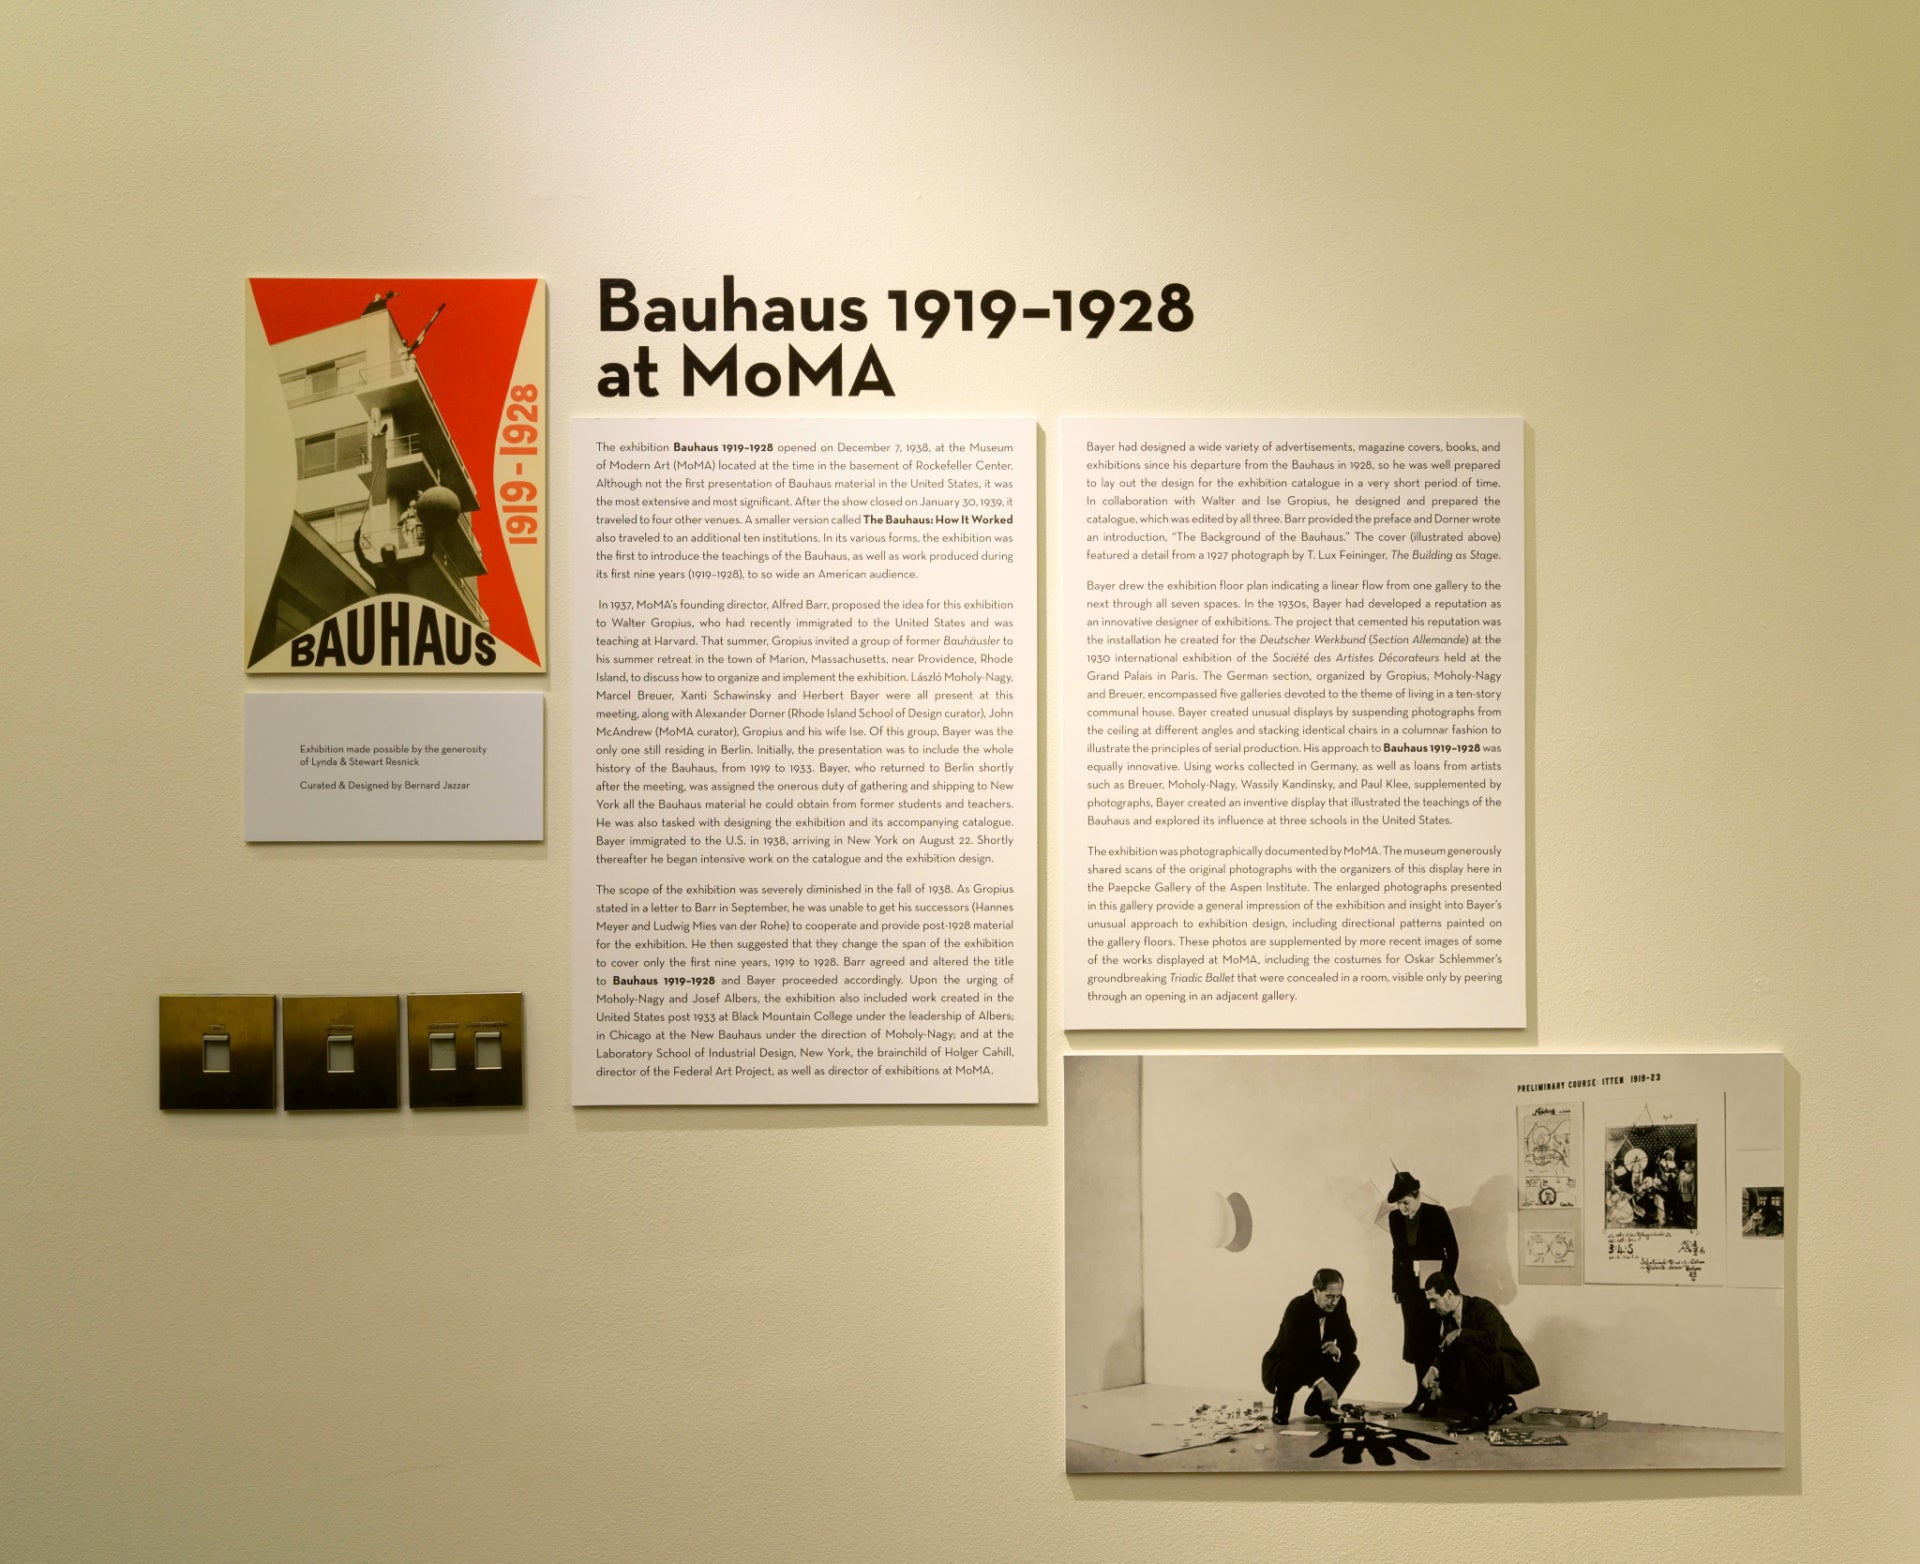 Bauhaus 1919-1928